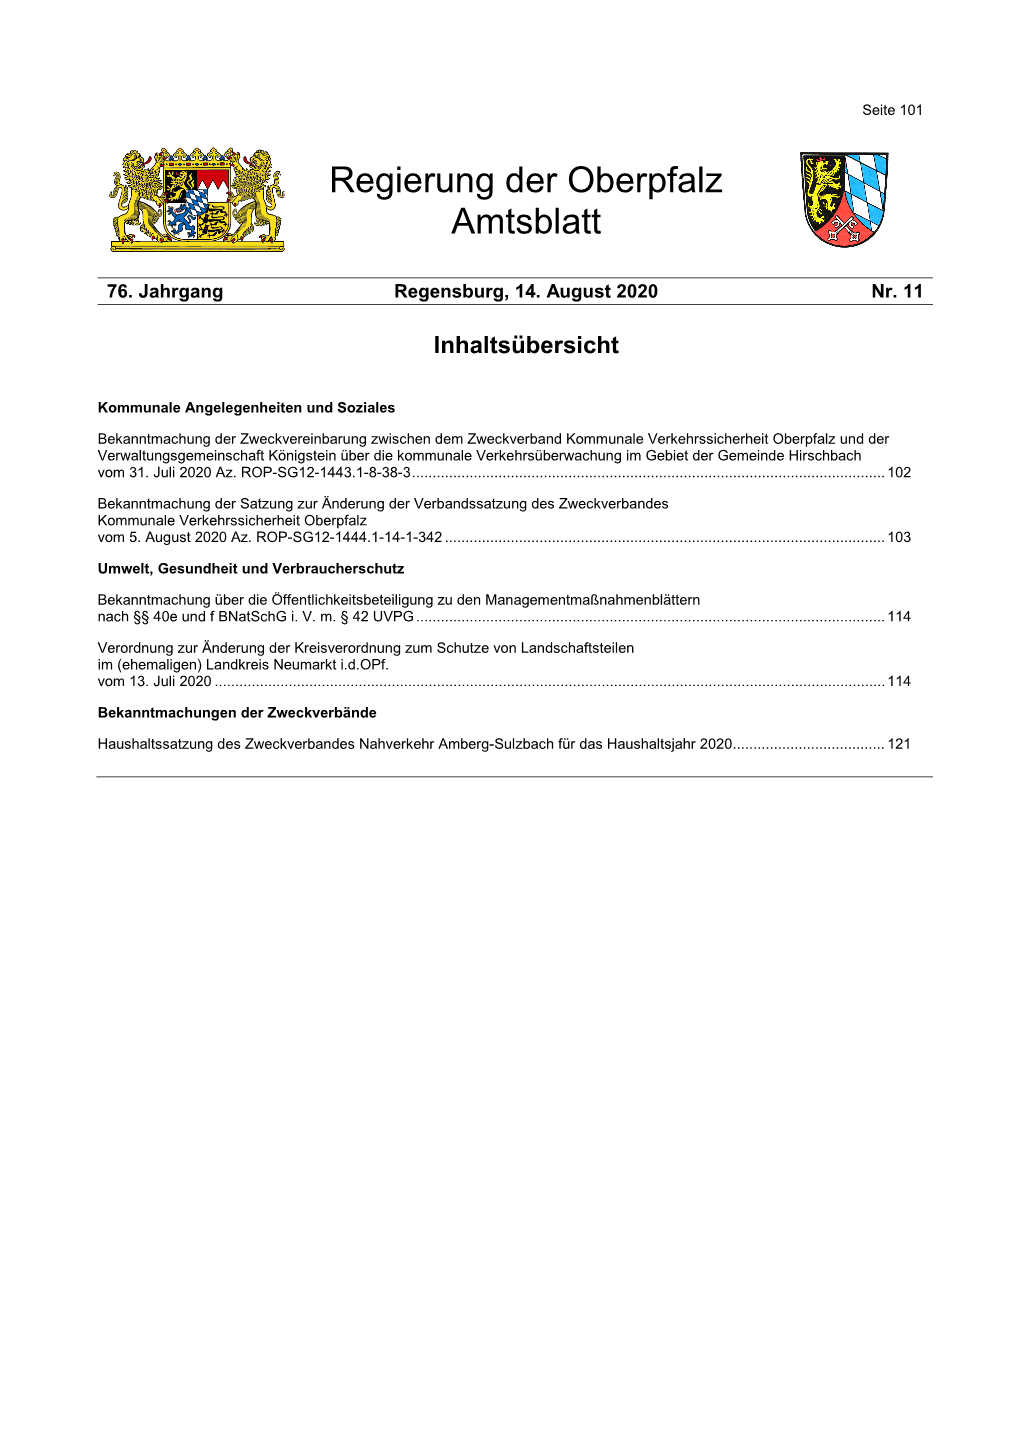 Amtsblatt Der Regierung Der Oberpfalz Nr. 11/2020